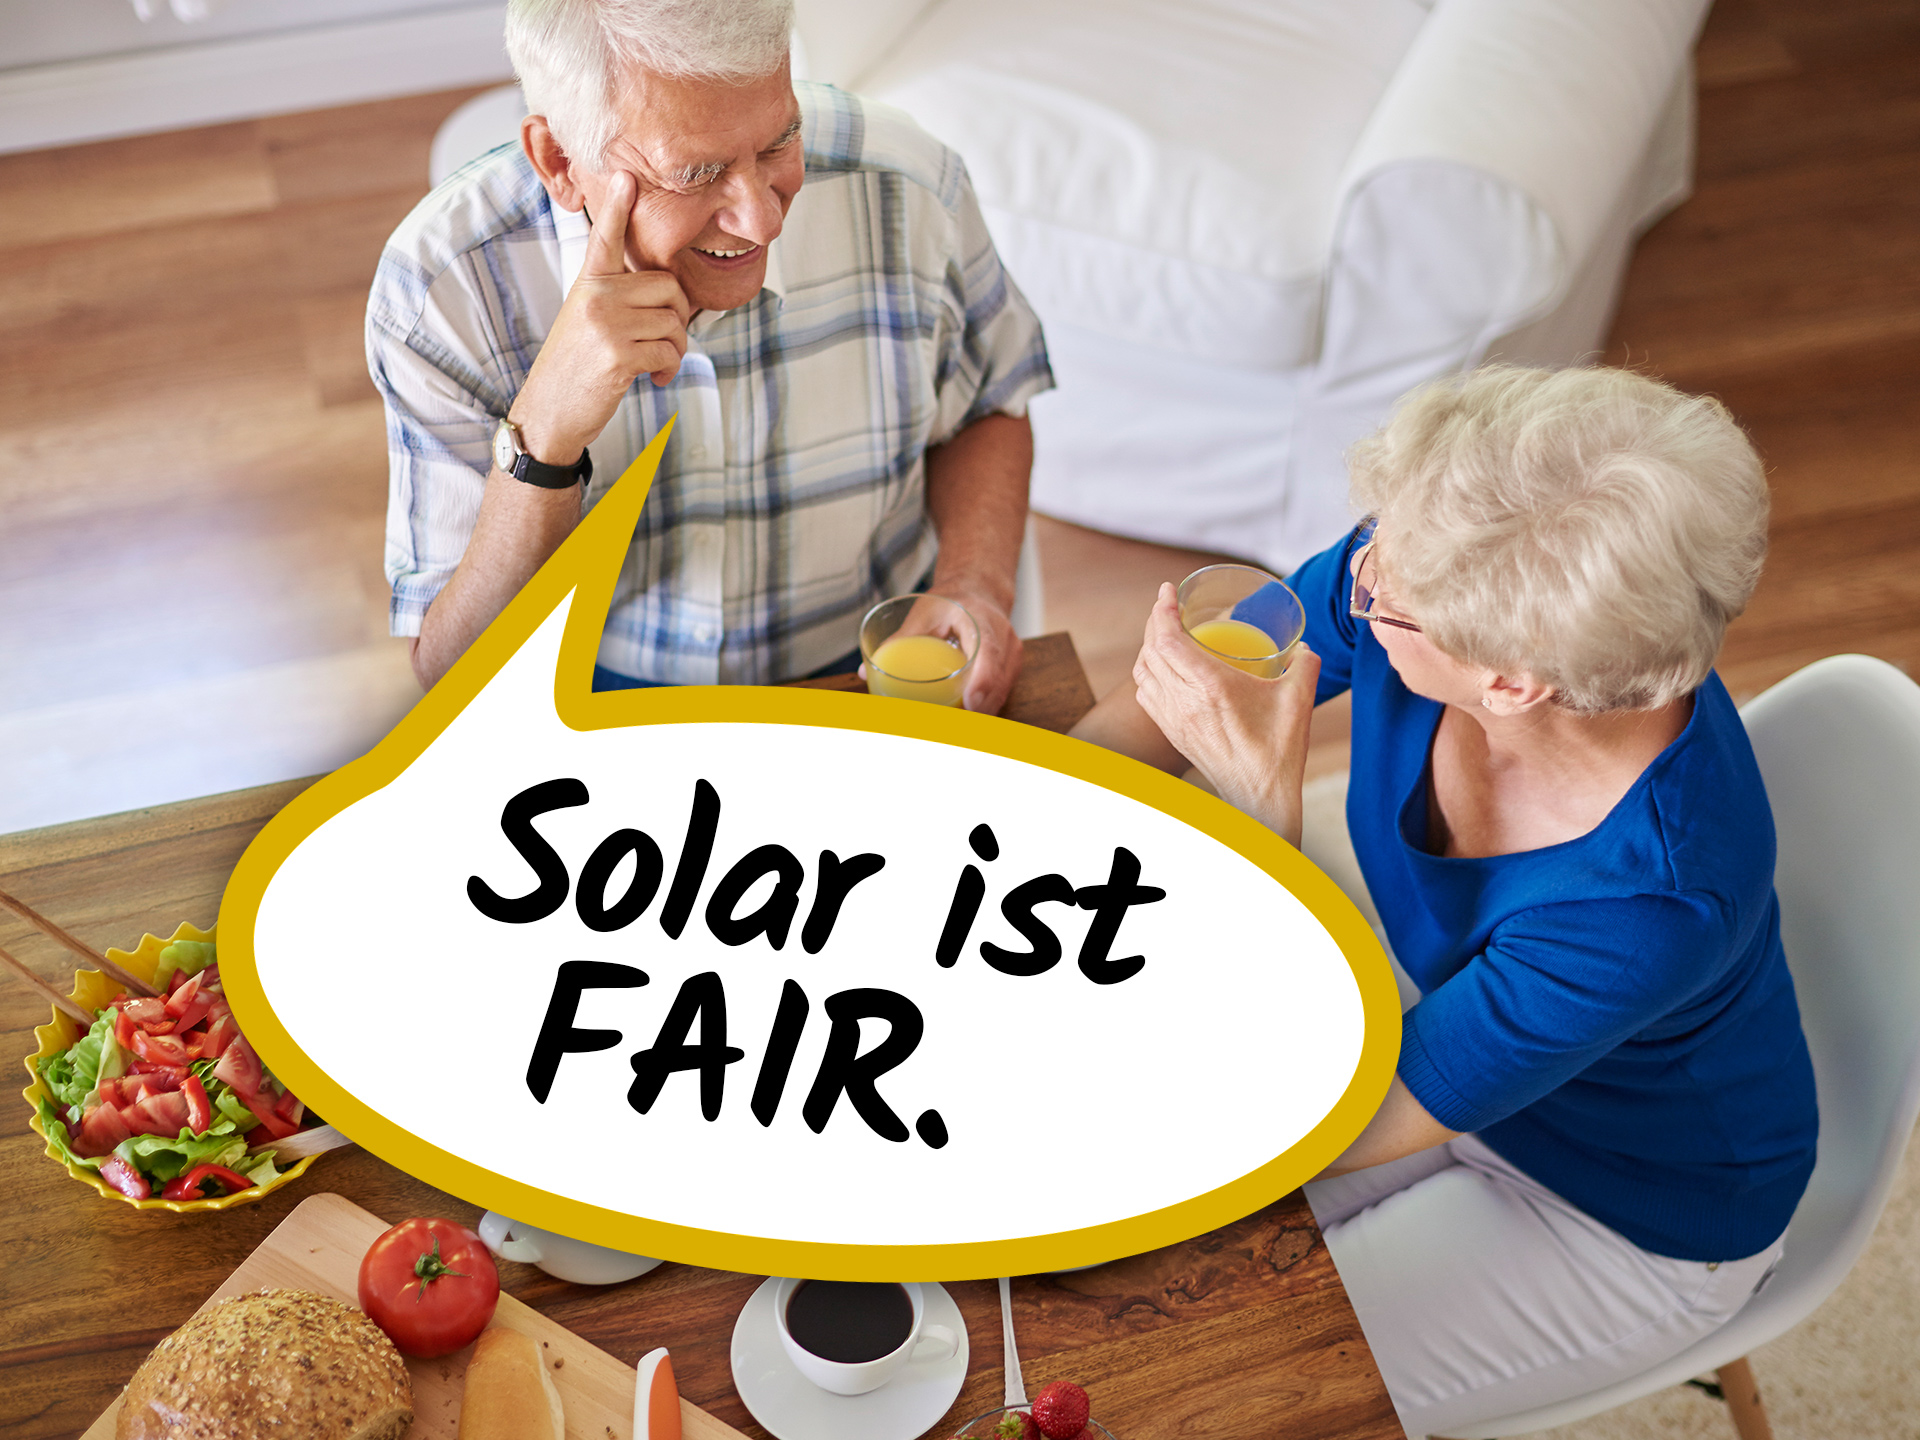 Solar ist fair- für Oma und Opa